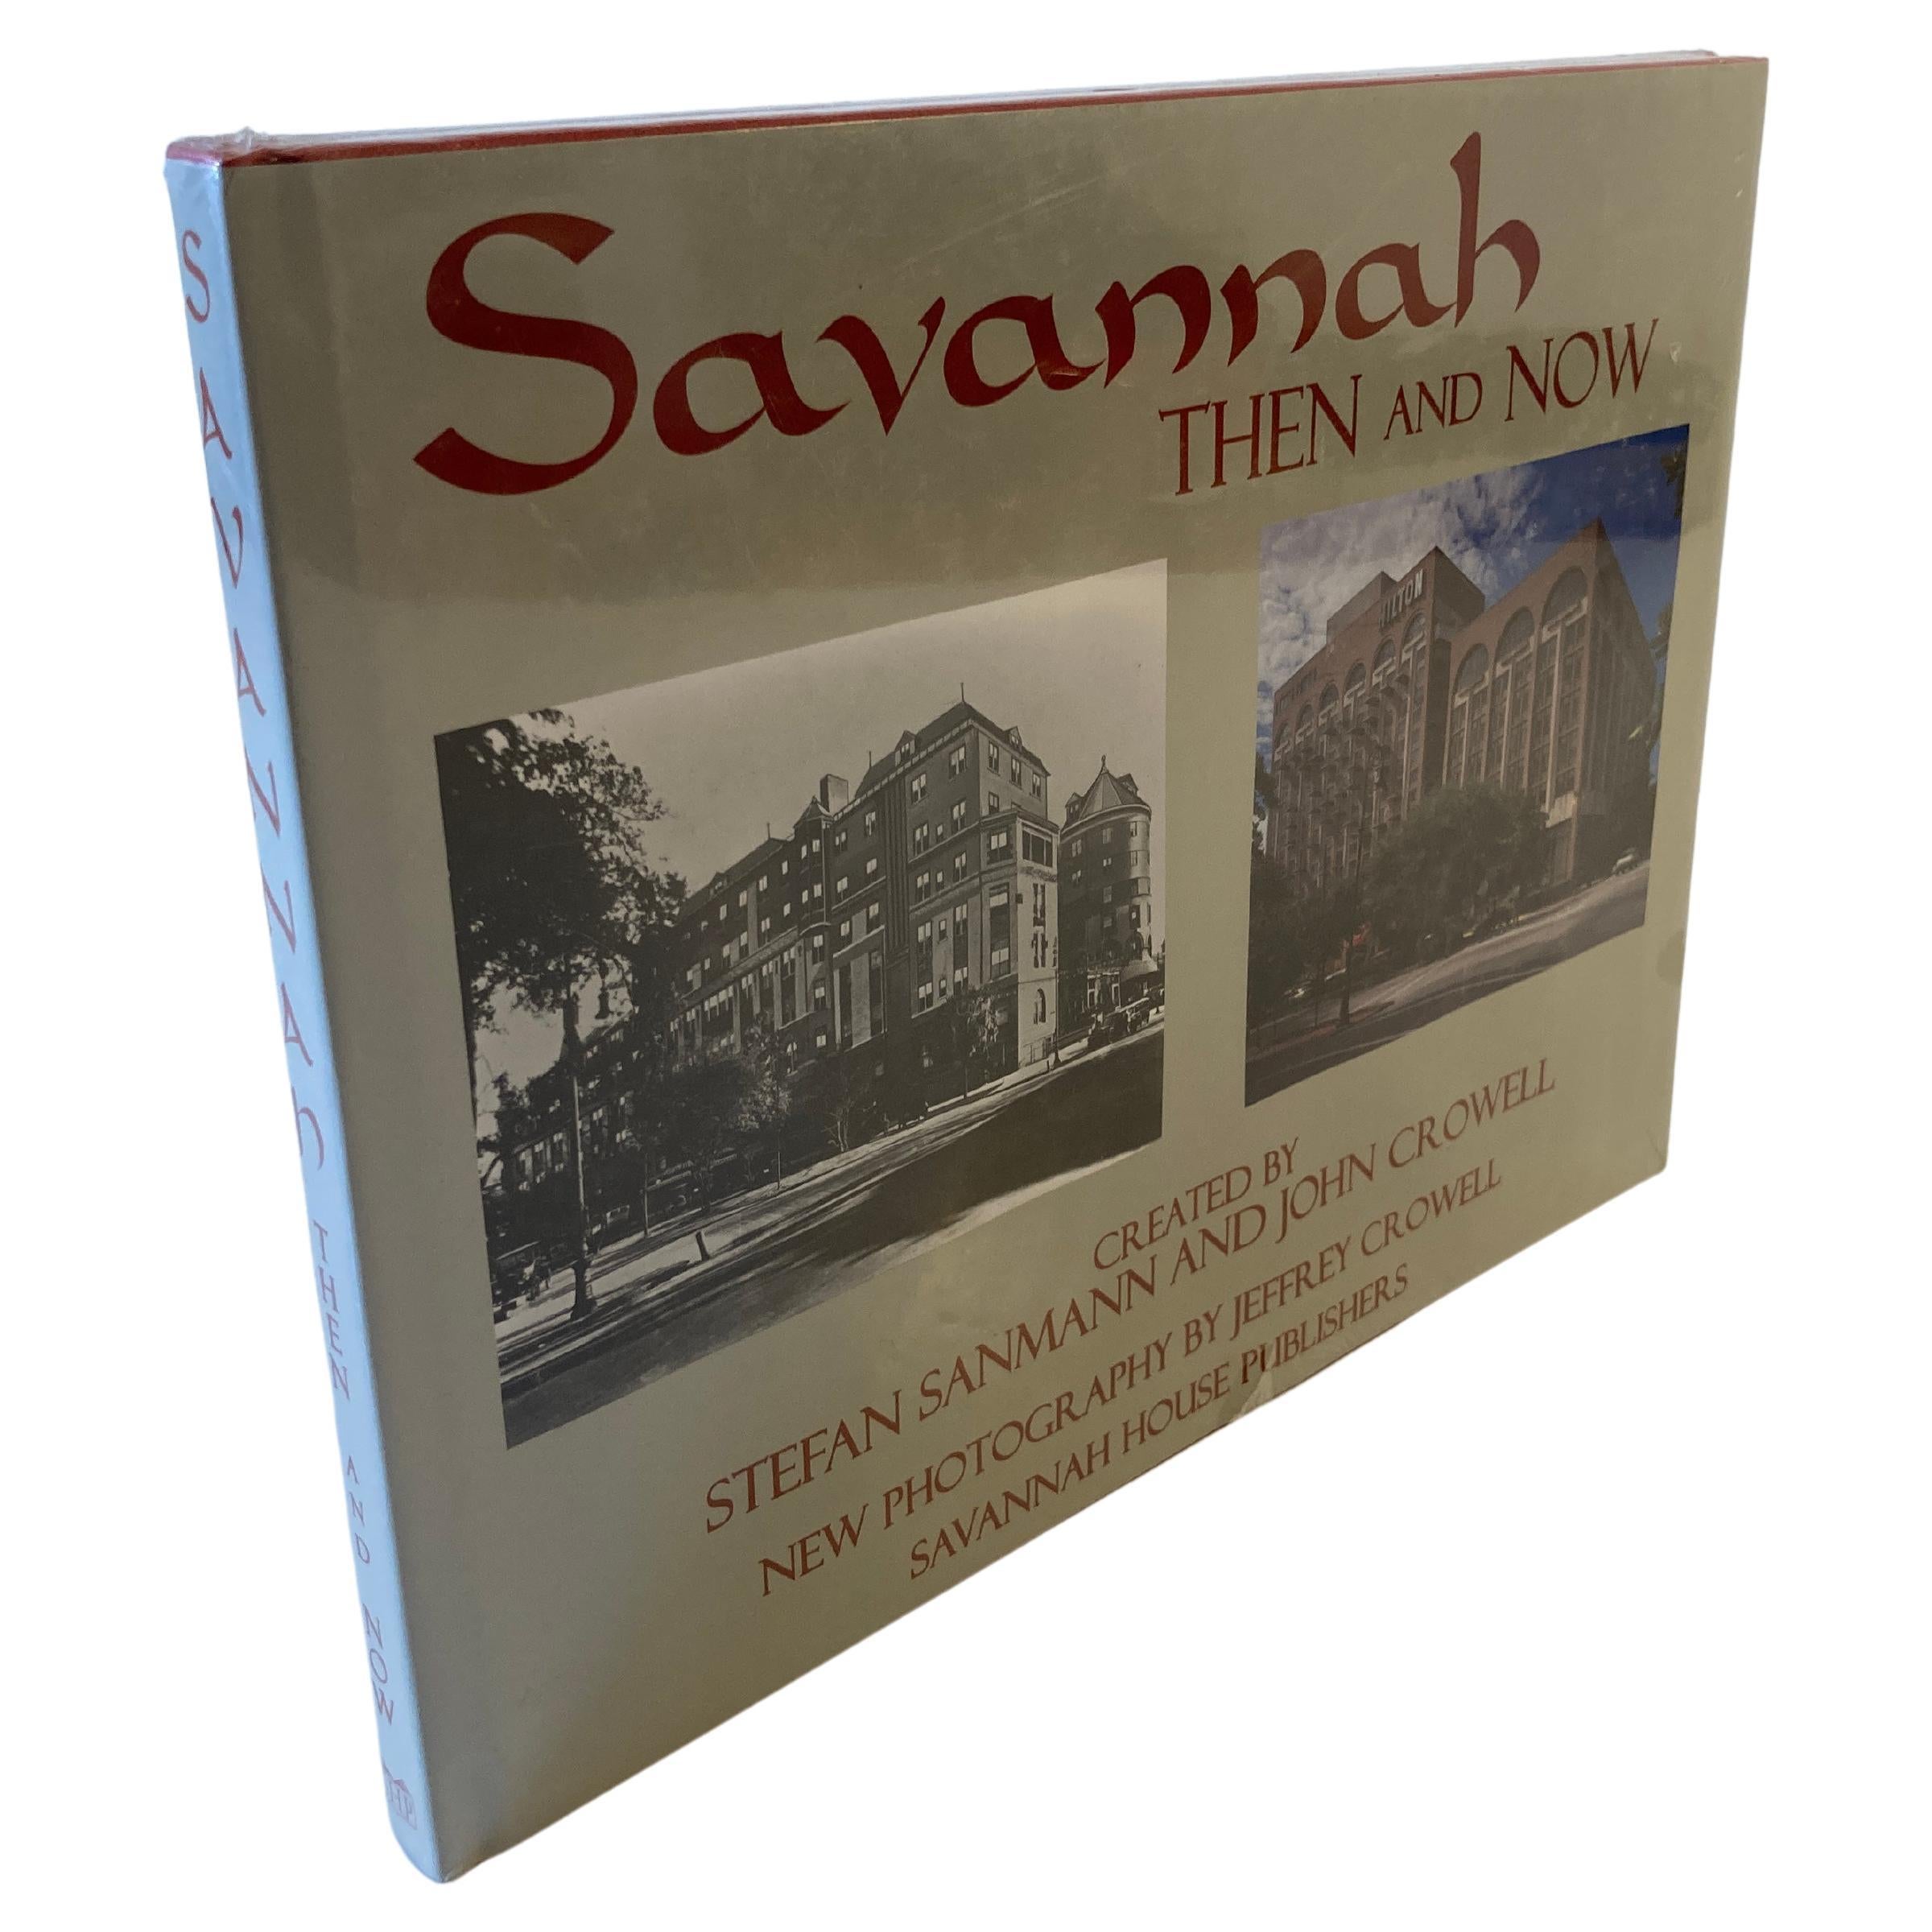 Livre à couverture rigide Savannah Then and Now de Stefan Sanmann et John Crowell